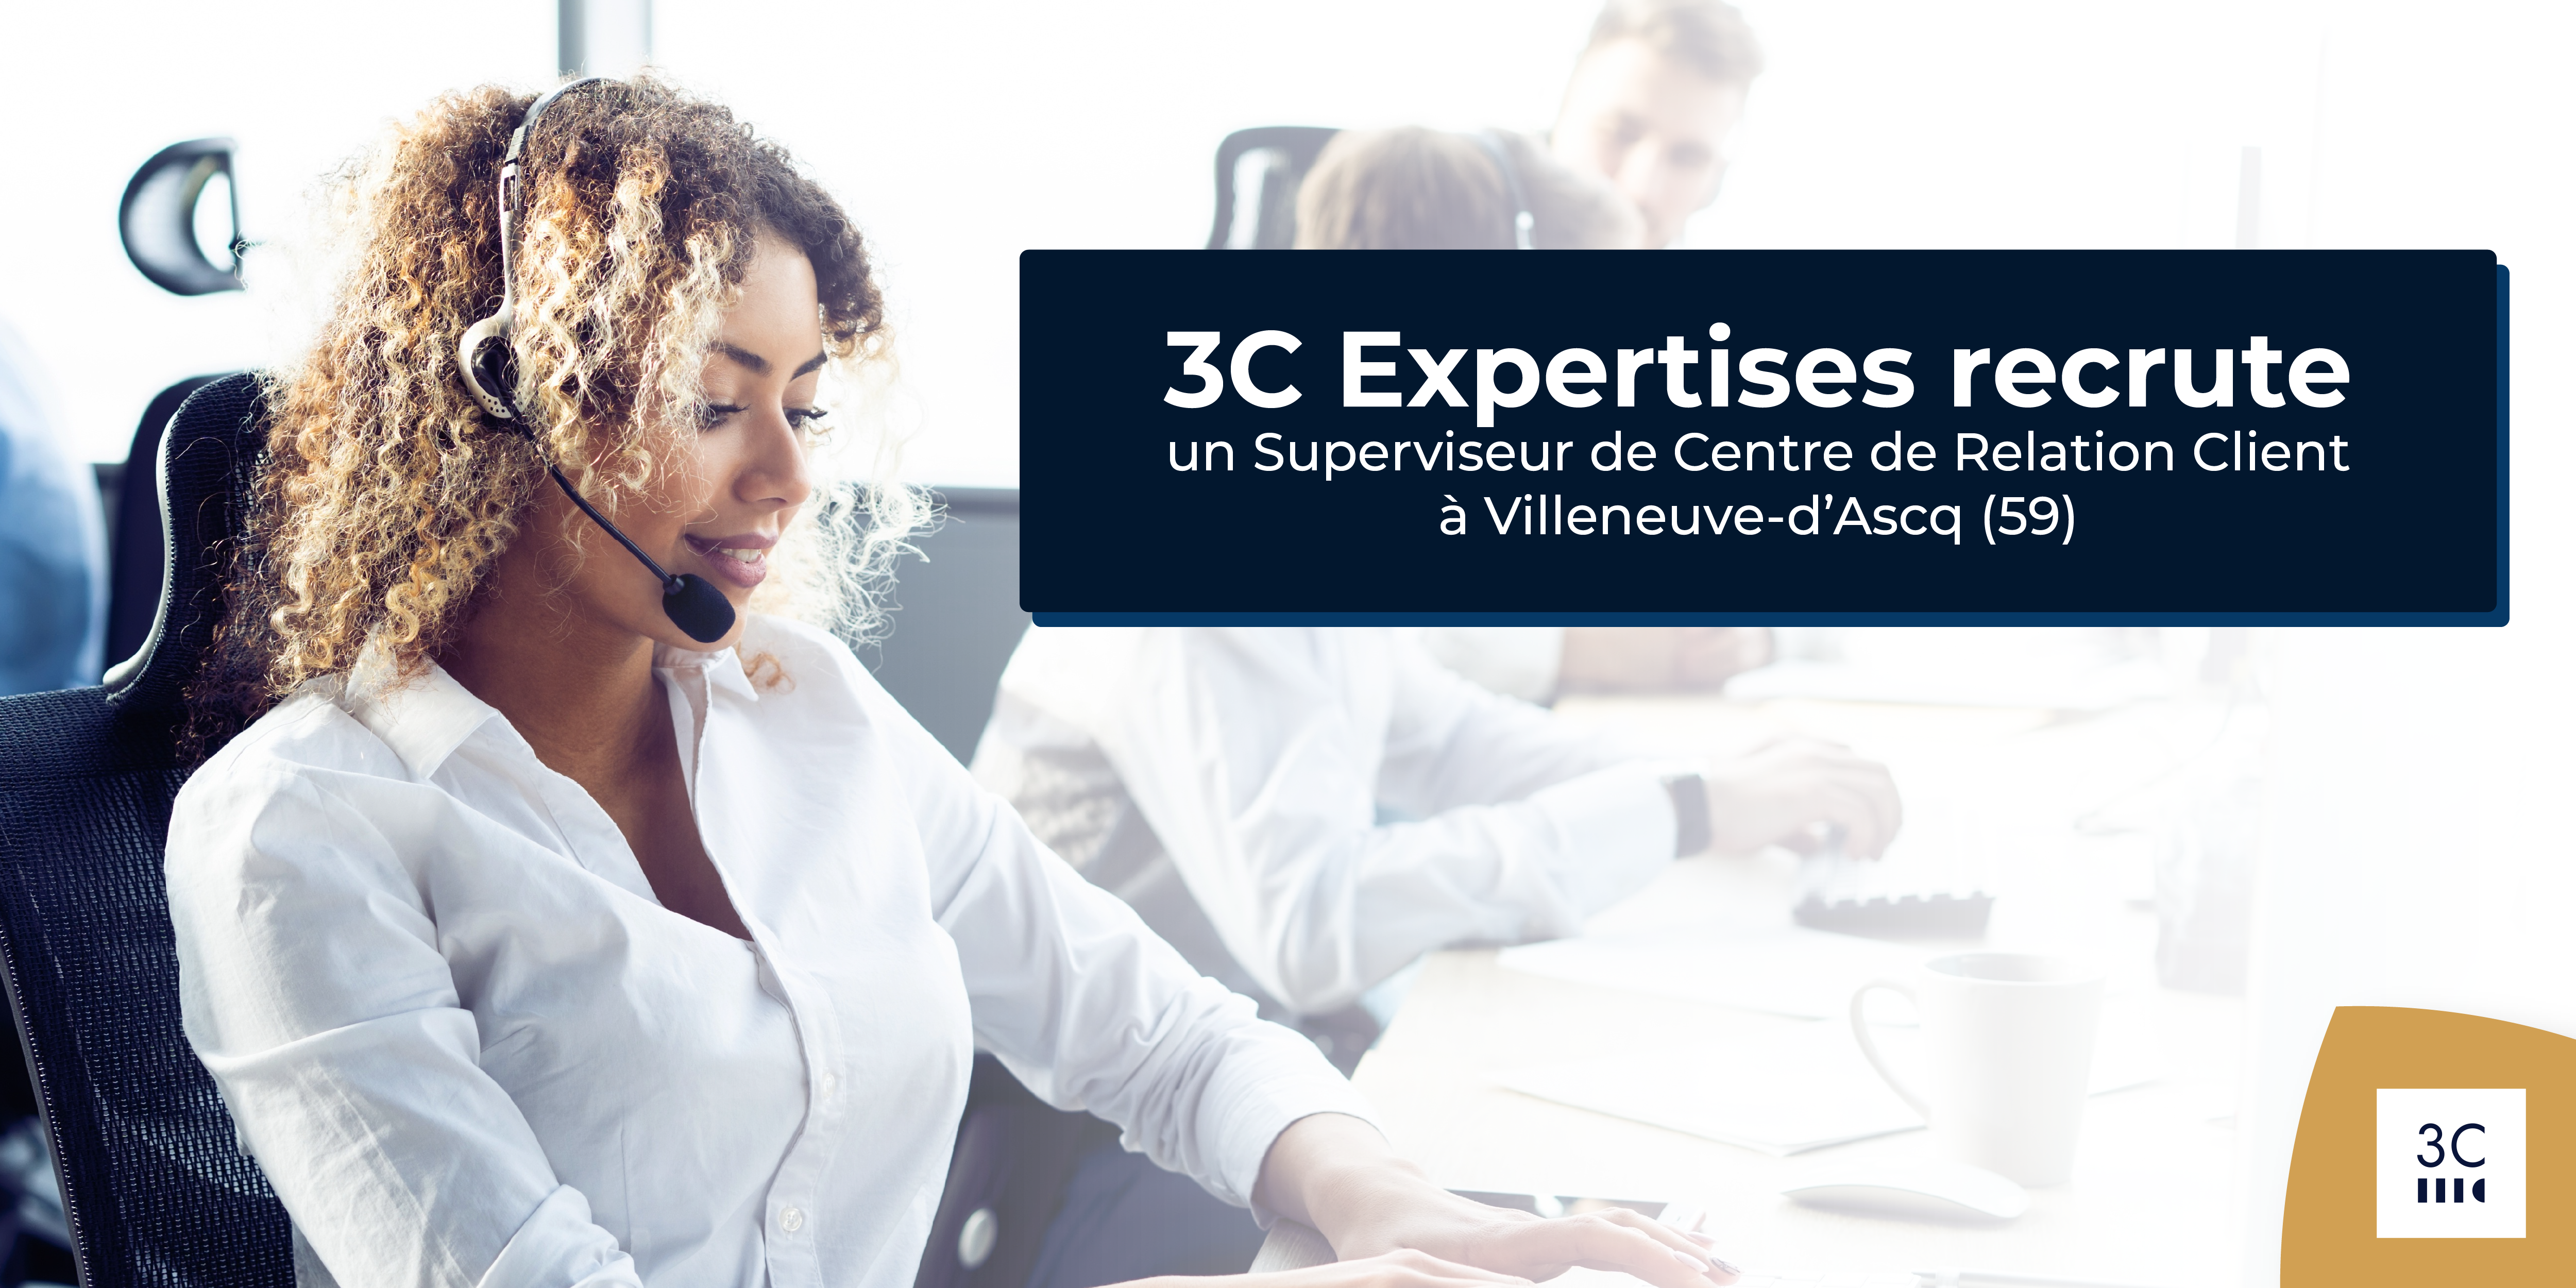 You are currently viewing 3C Expertises recrute un Superviseur de Centre de Relation Client H/F à Villeneuve-d’Ascq (59). 👥